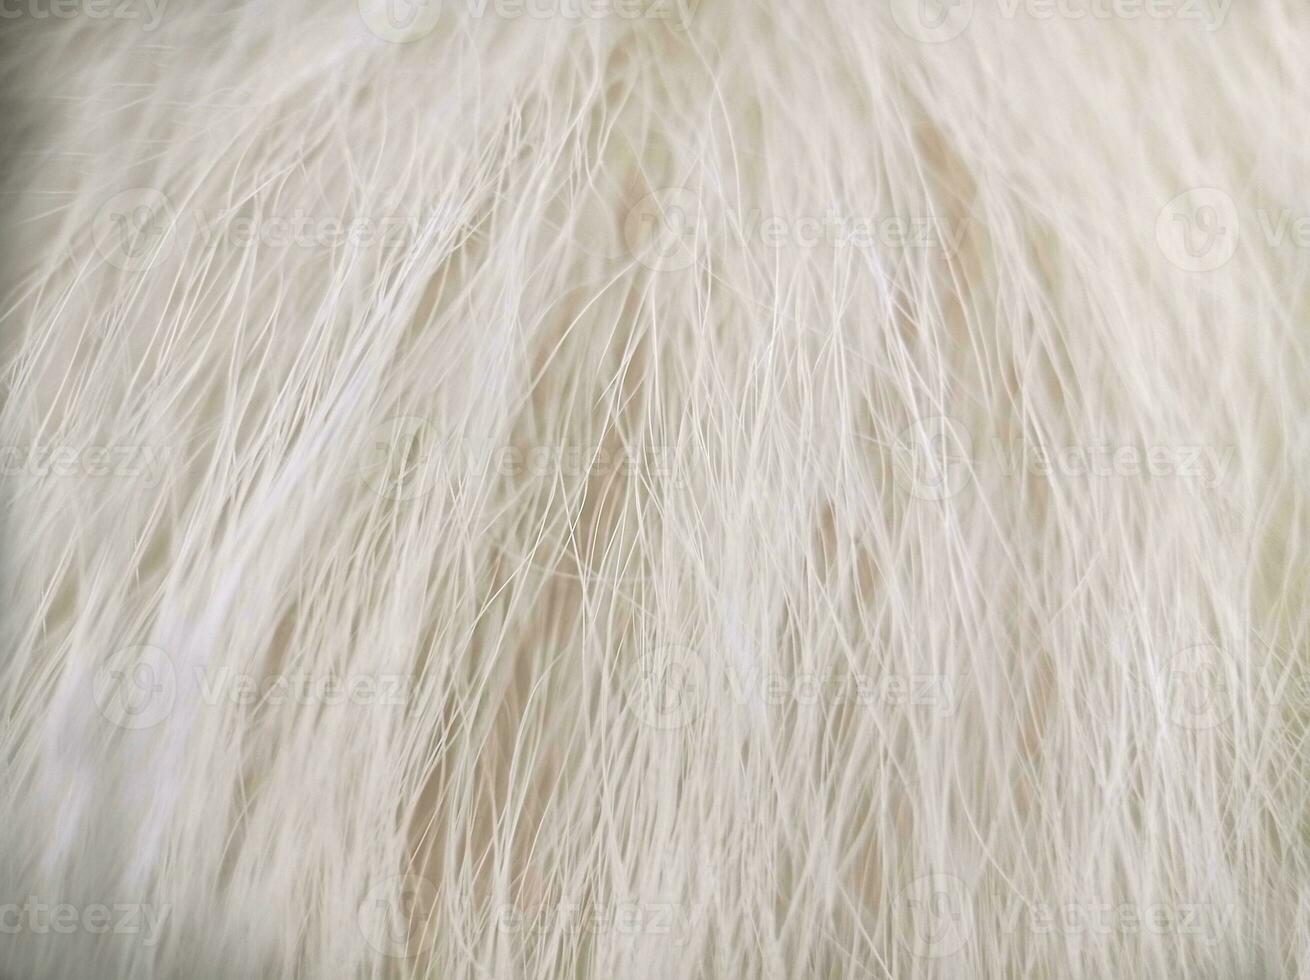 bianca cane gatto lungo pelliccia struttura macro superiore Visualizza foto